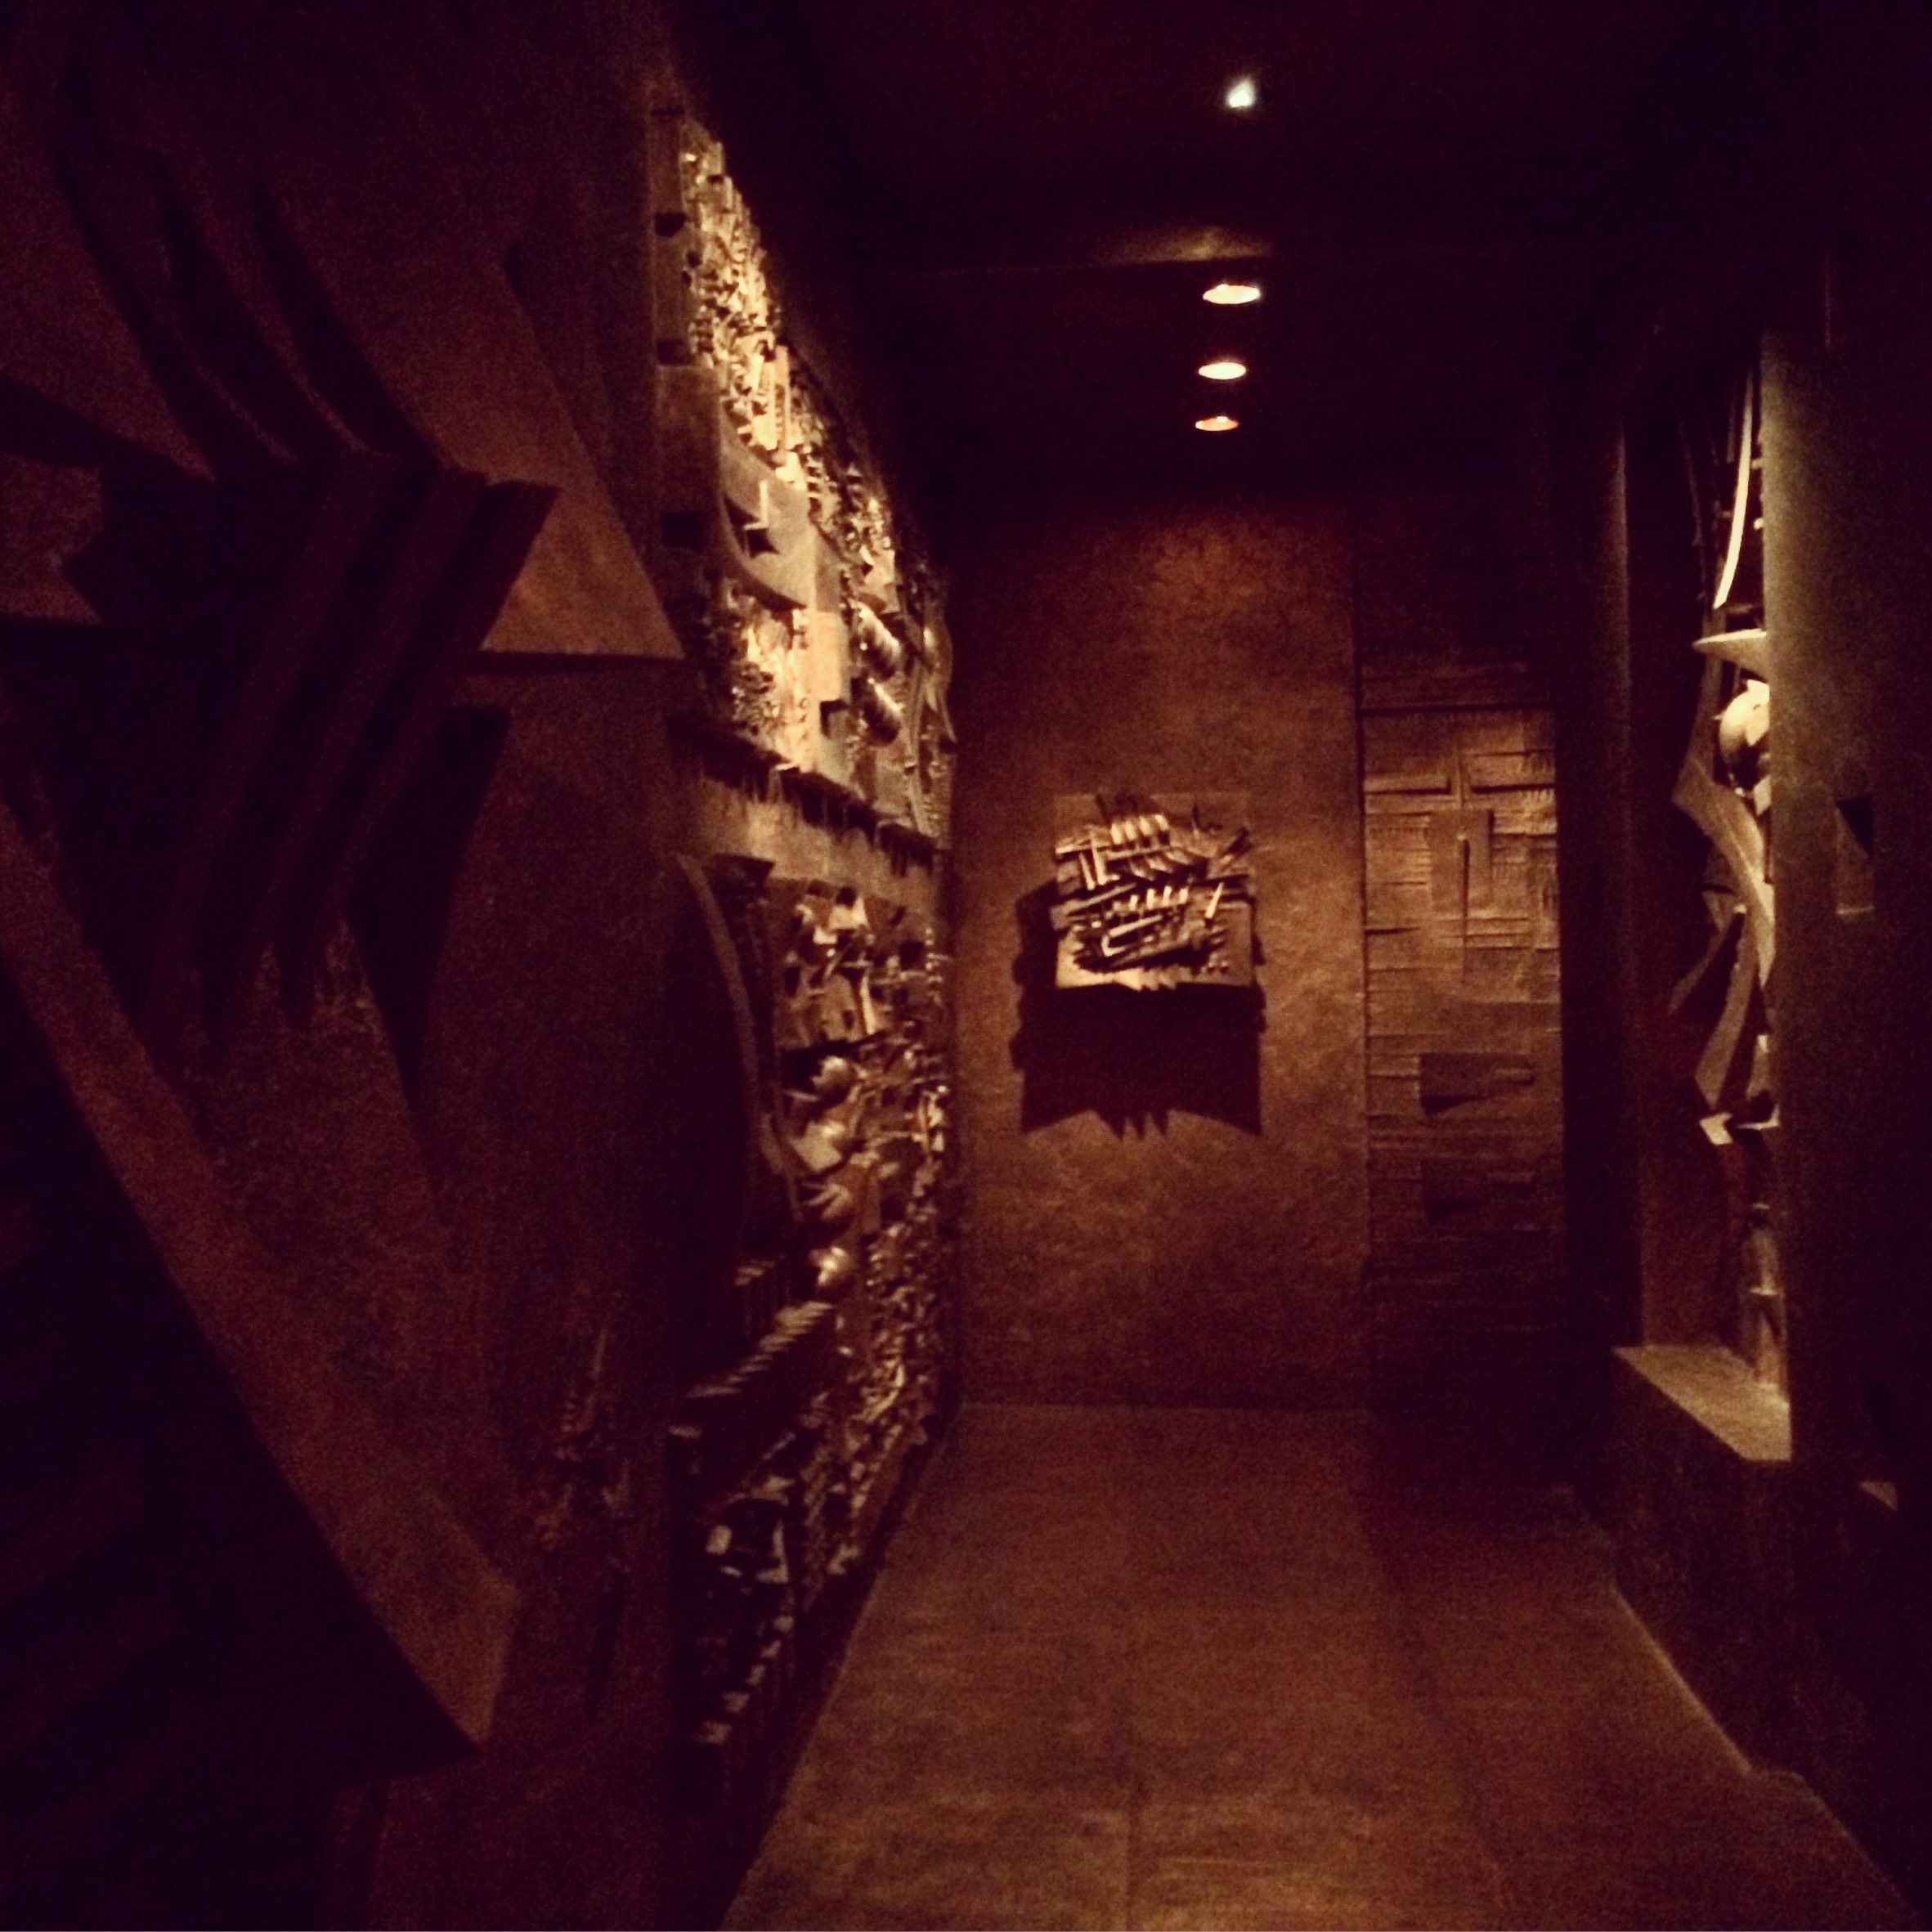 Le labyrinthe d’Arnaldo Pomodoro dans les sous-sols du showroom de la maison Fendi.